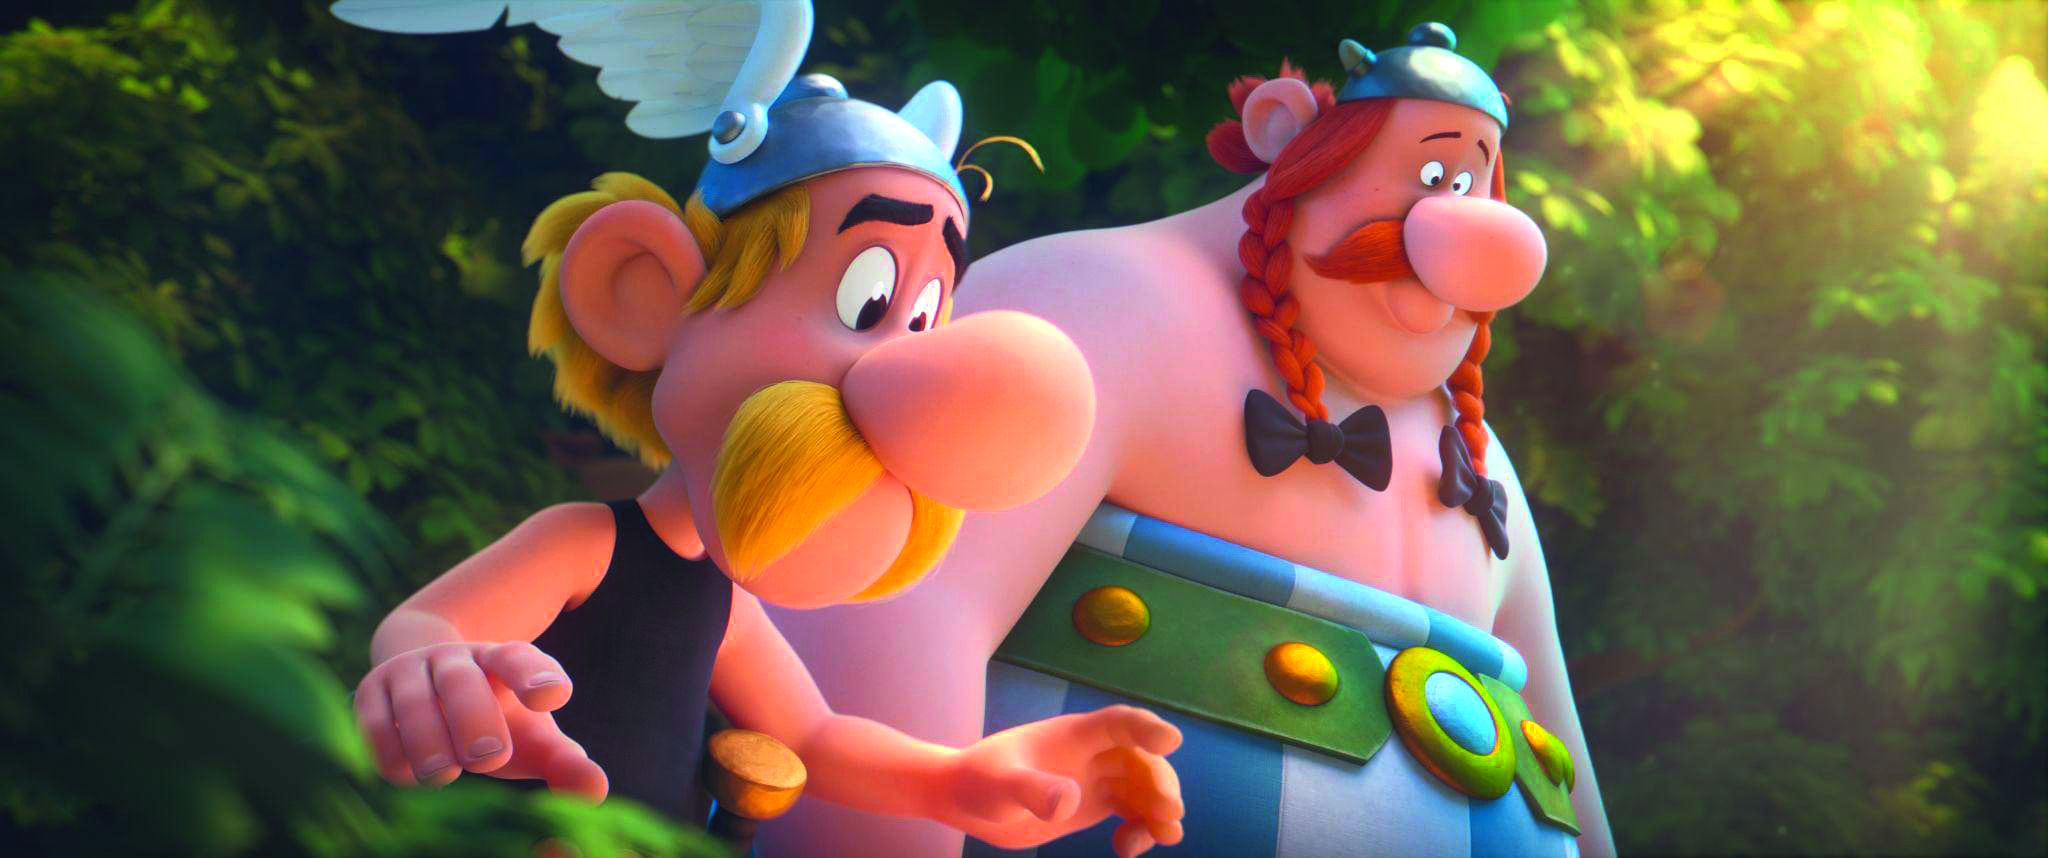 Asterix und das Geheimnis des Zaubertranks Szenenbilder 05.72dpi - KINOFILME AB 14.03.2019